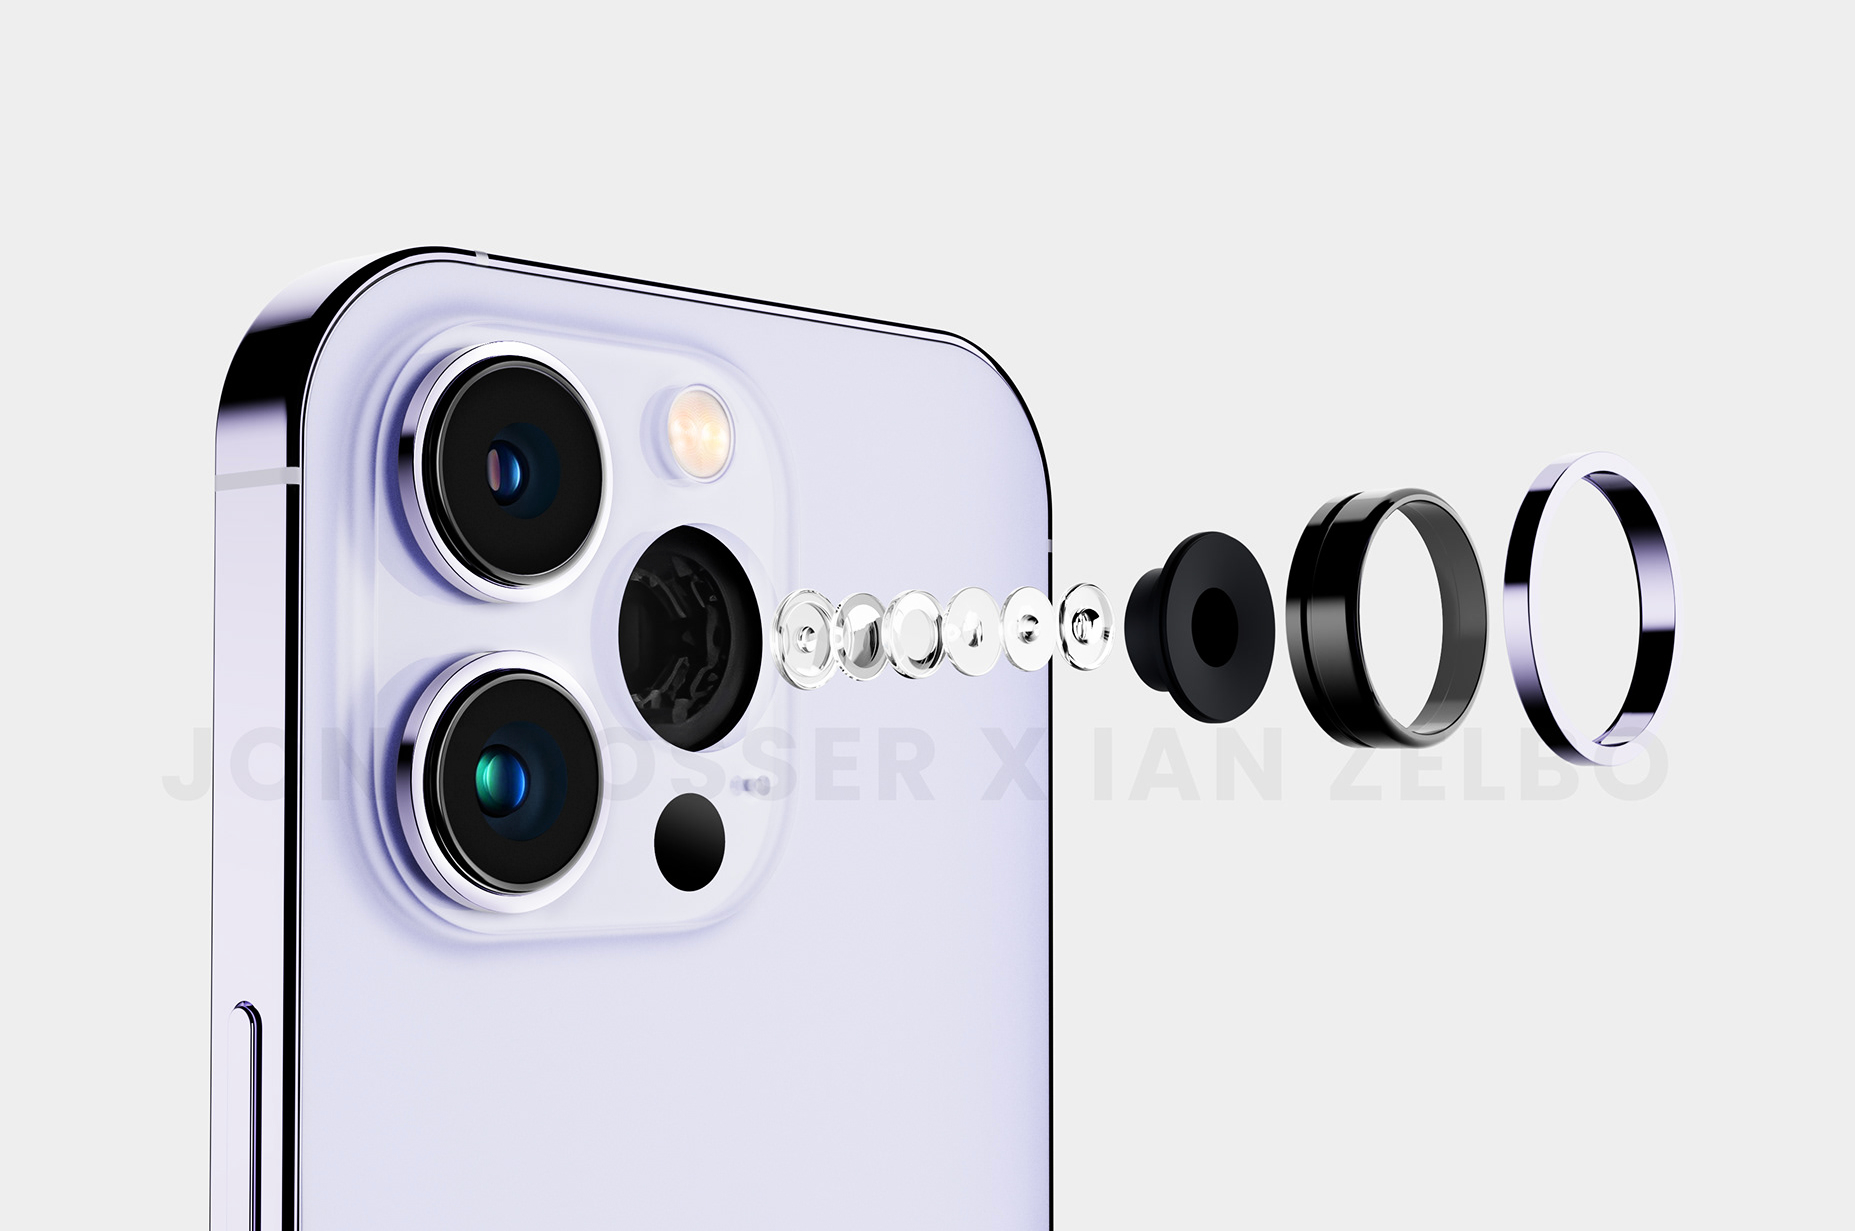 Das Apple iPhone kann mit Camera+ 48 MP Fotos aufnehmen, auch ohne die